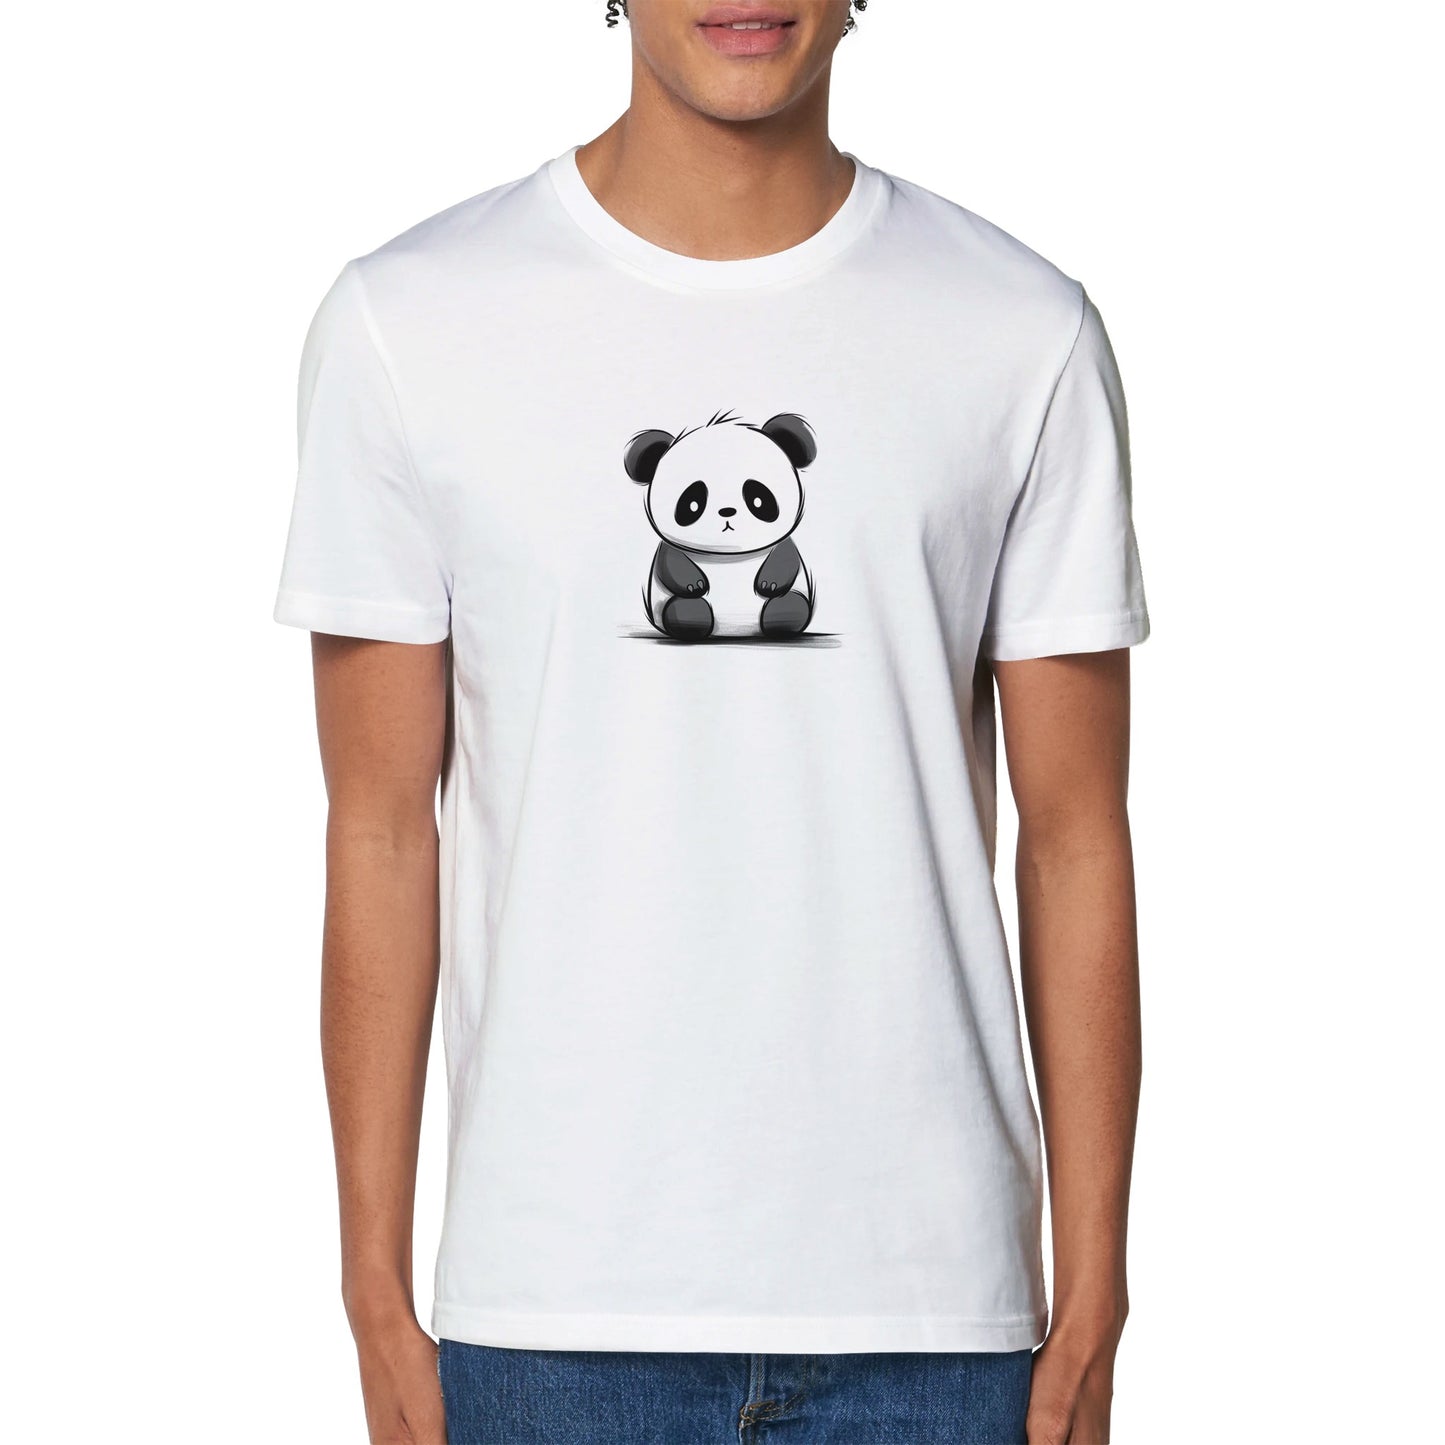 Limited Edition 'Ickle Panda' Minimalist Marvel! 🐼🌟